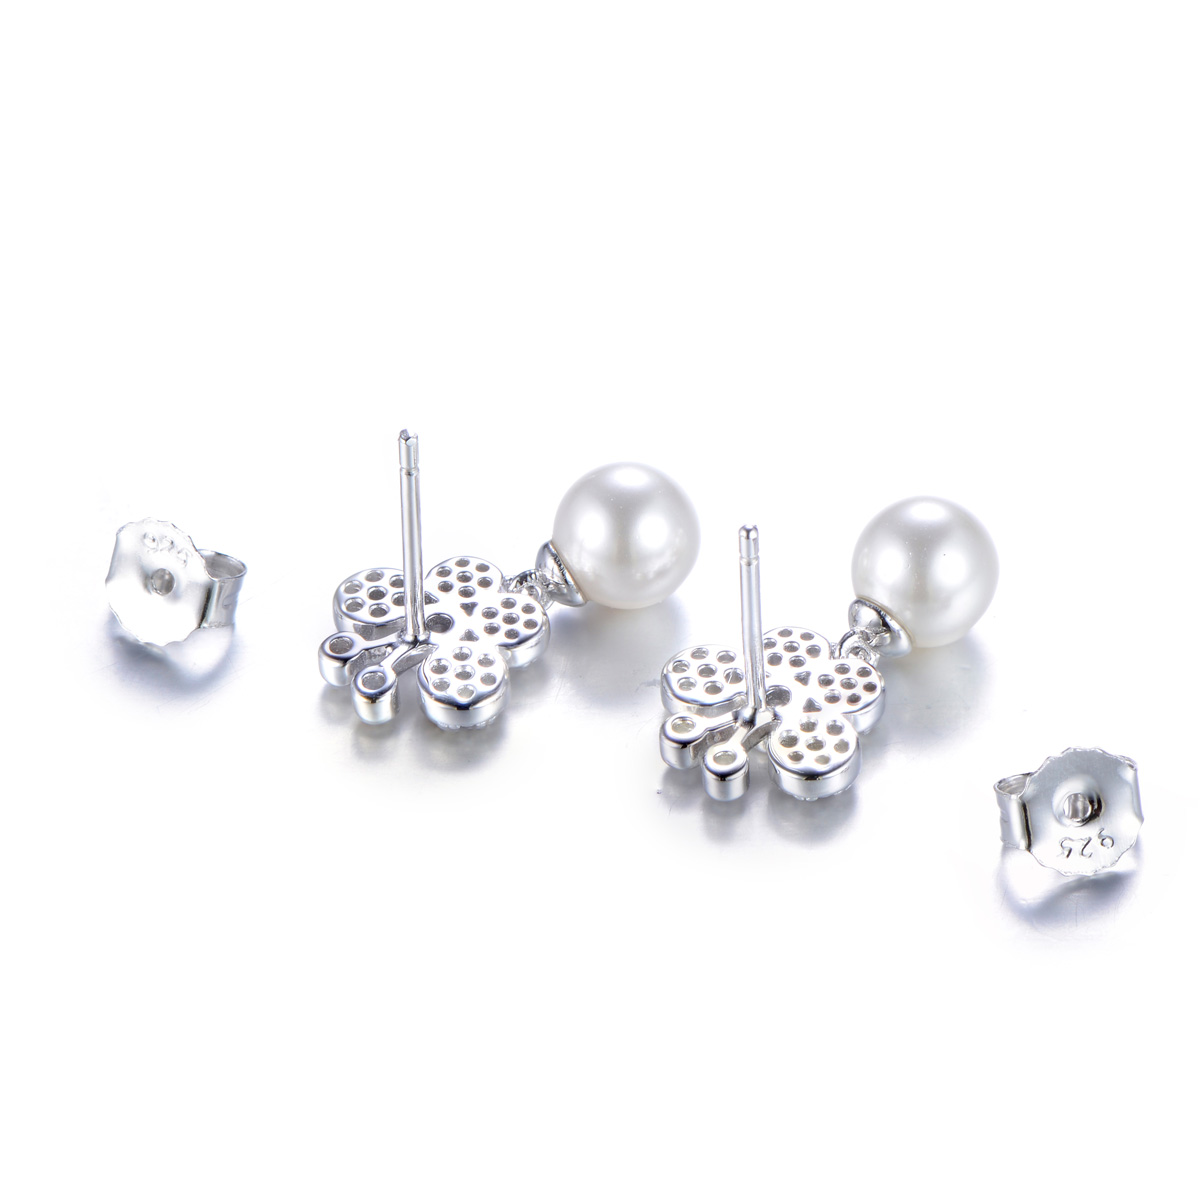 Pearl butterfly studs earrings